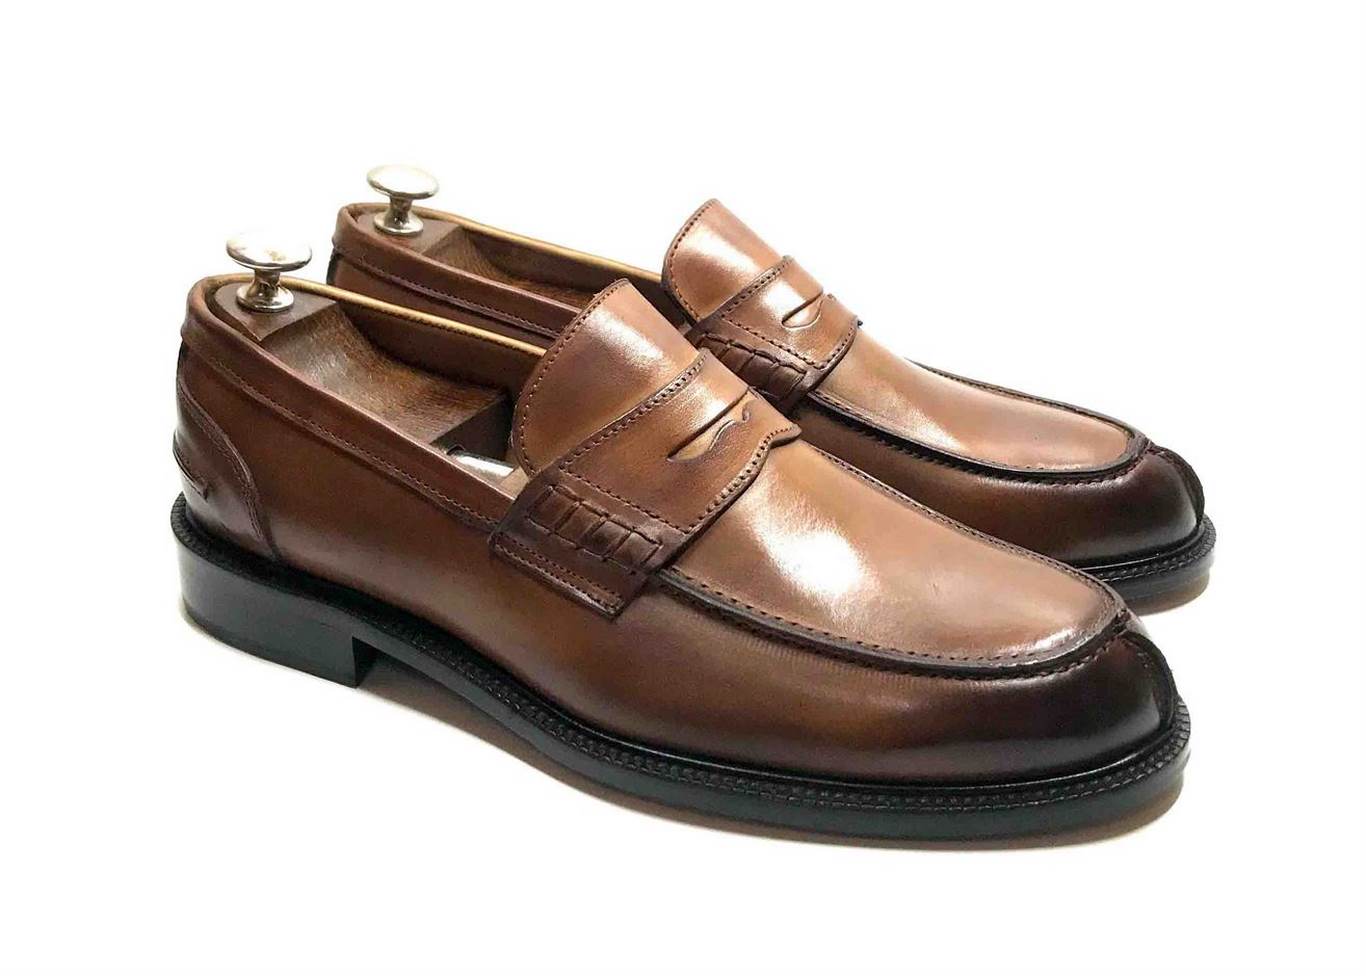 Yaer Uomo Elegante Mocassini Slip On Penny Loafers Scarpe di Guida Casuale Scamosciato Pelle Pantofola 39-49 